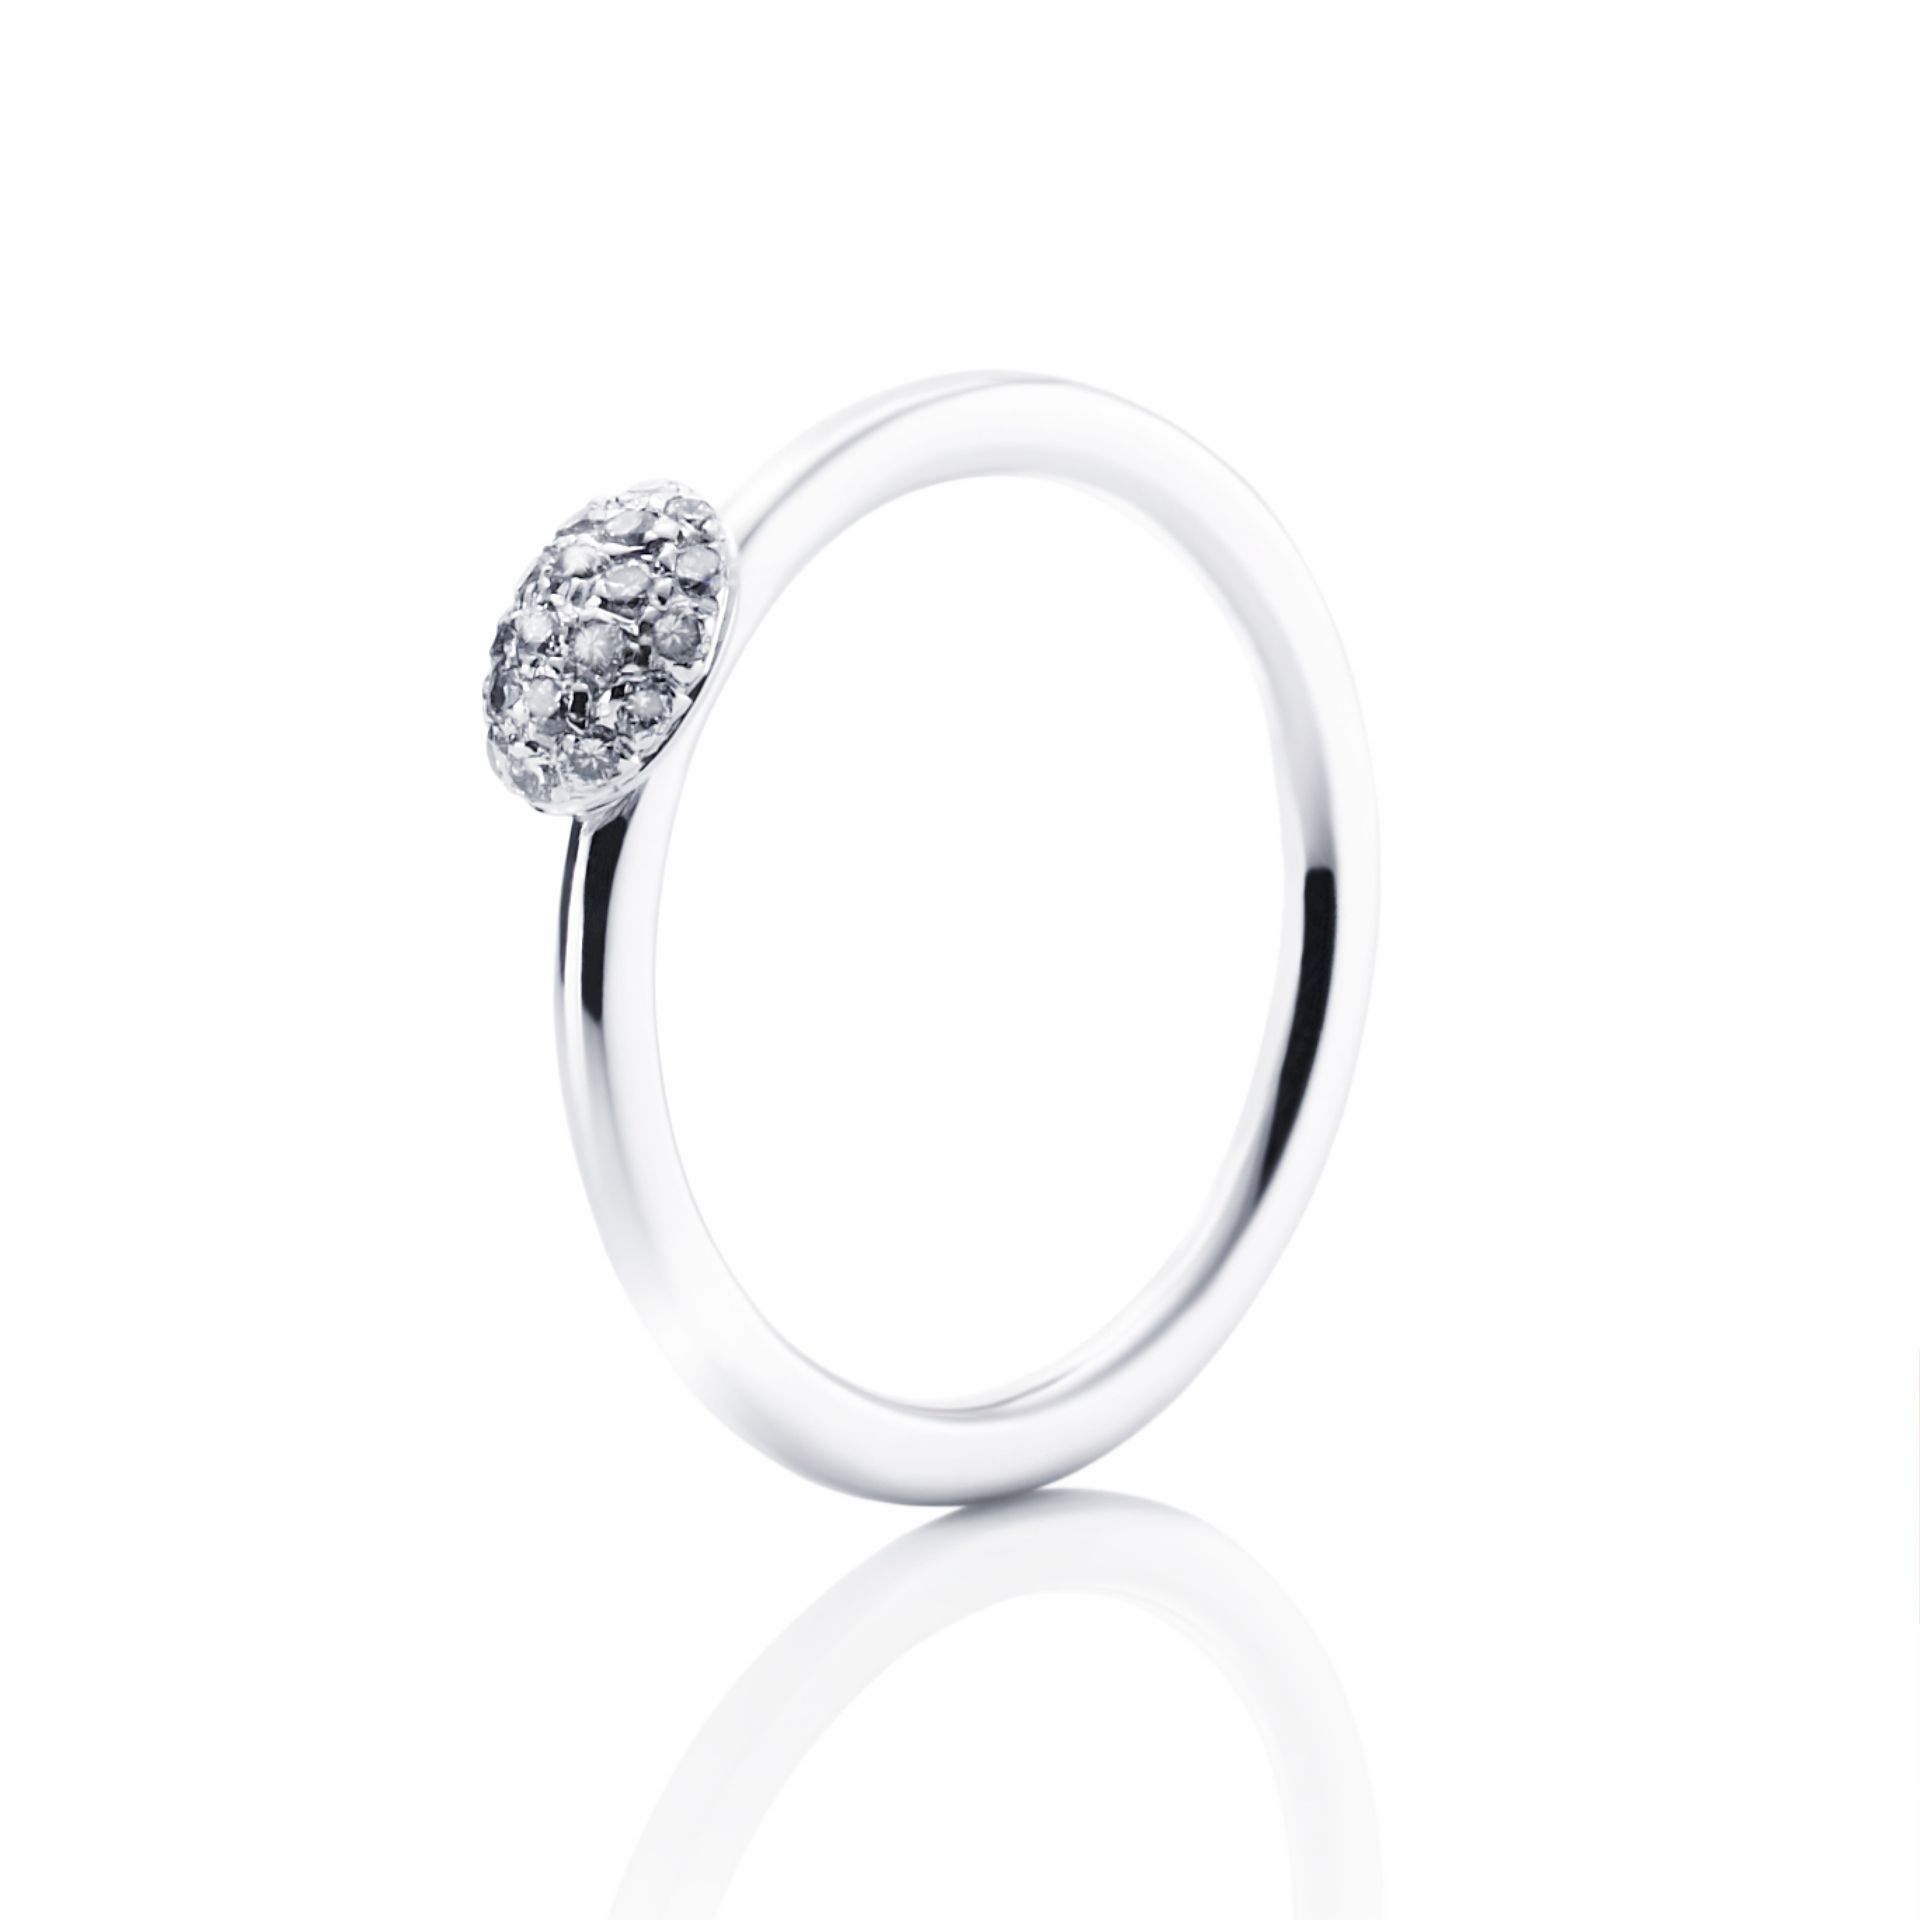 Efva Attling Love Bead Ring - Diamonds 16.25 MM - VITGULD